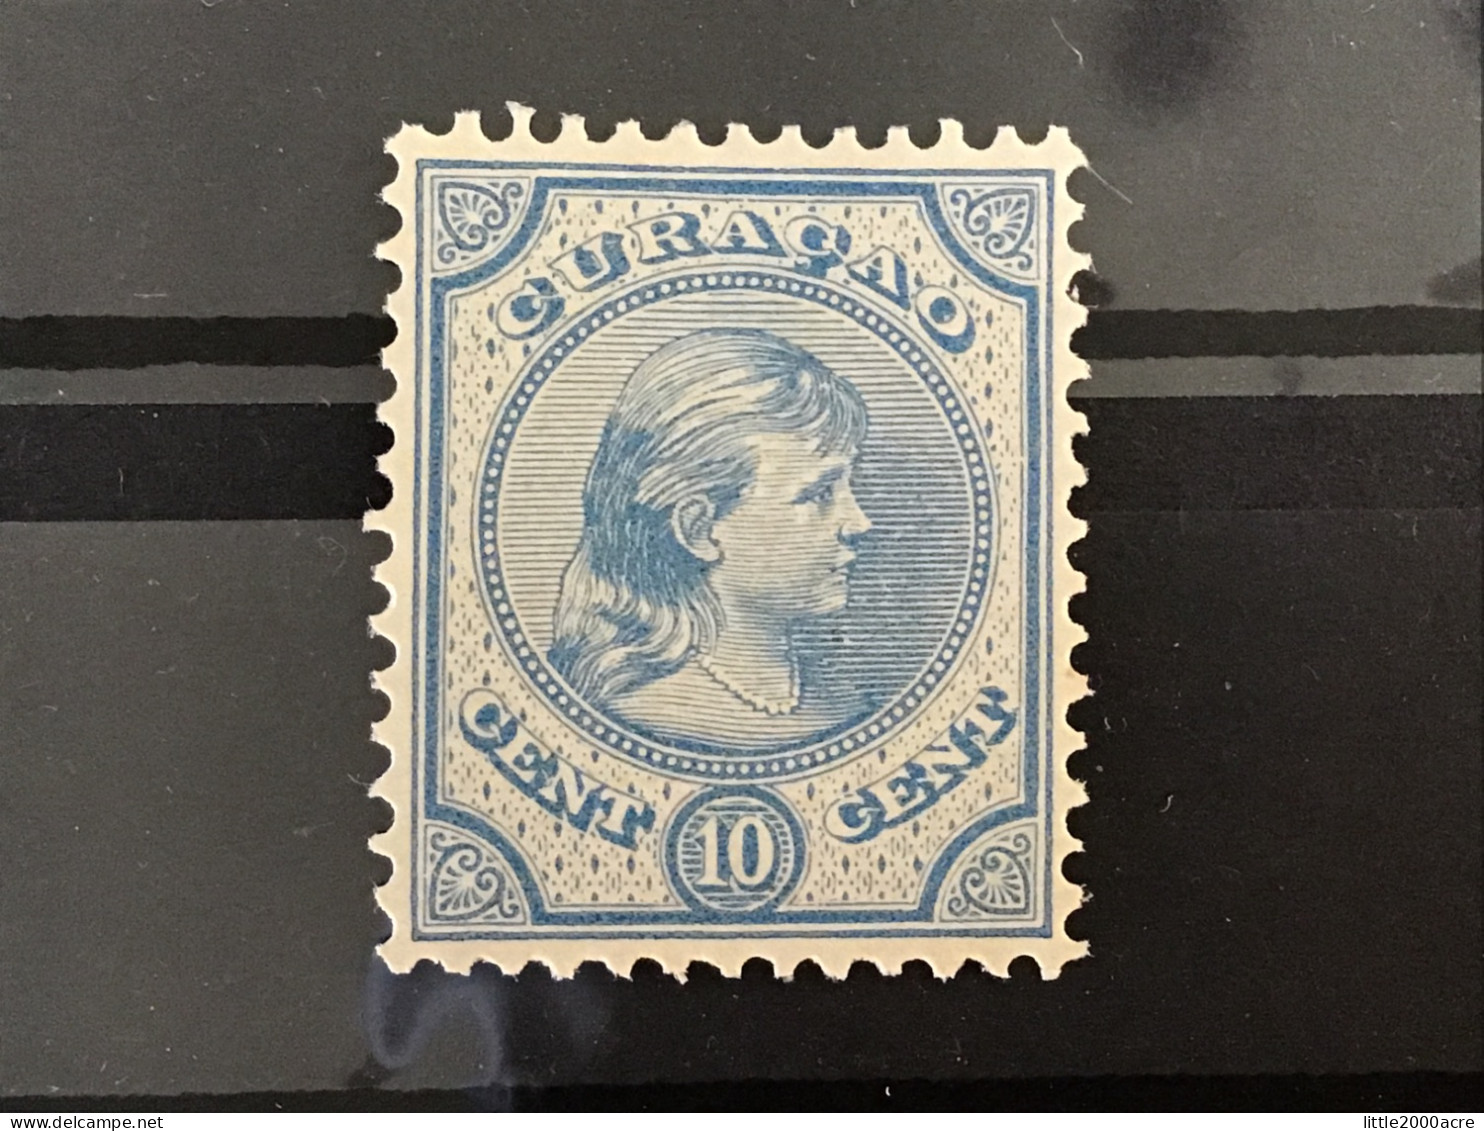 Curacao 1892-5 10c Blue Mint SG 43 NVPH 19 - Niederländische Antillen, Curaçao, Aruba